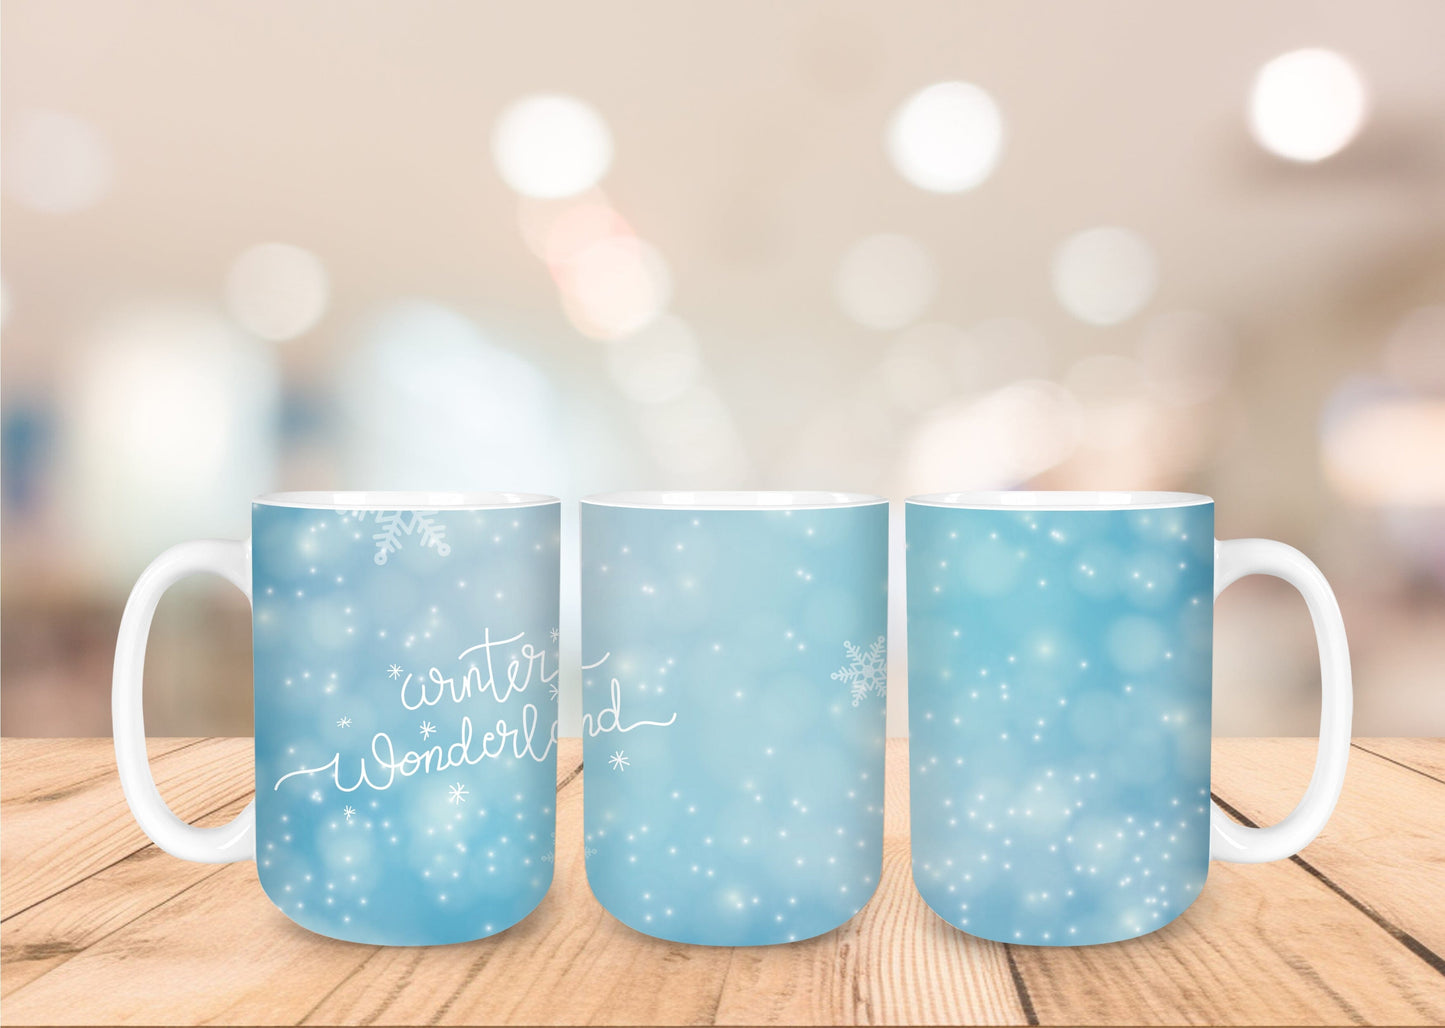 Christmas 15oz Coffee Mug - 15 Designs to Choose From 15oz Coffee Mug Graphic Avenue Snowflakes 